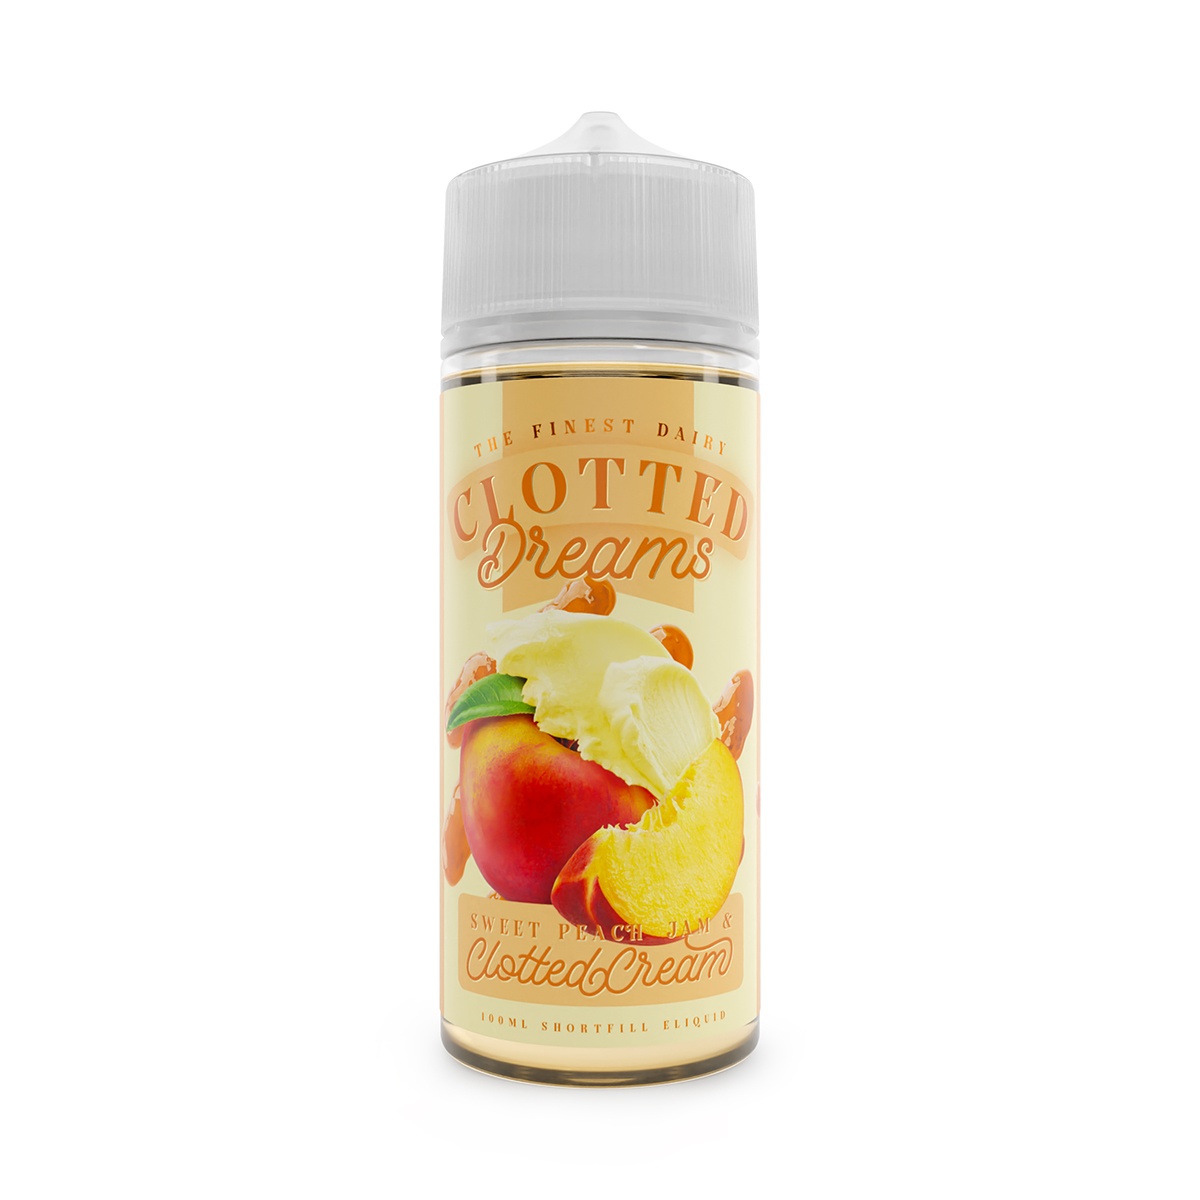 Clotted Dreams E-liquid 100ml Shortfill Sweet Peach Jam & Clotted Cream